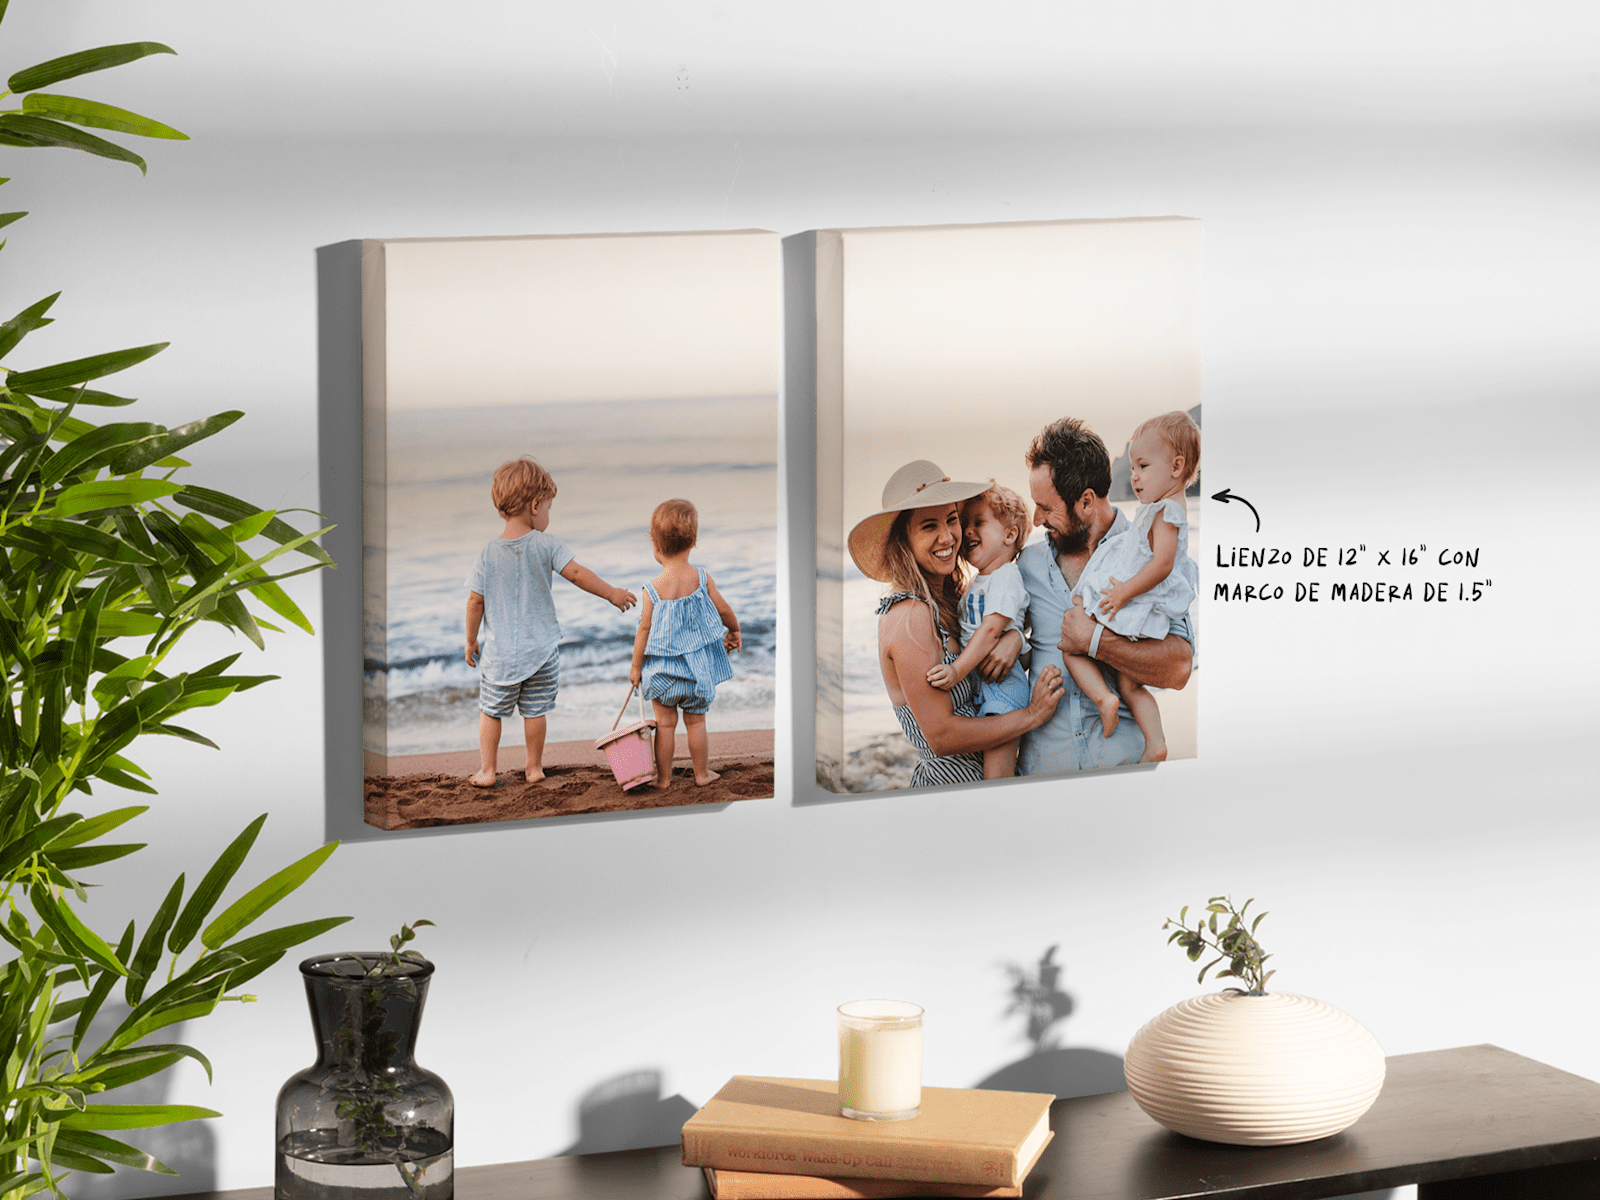 Dos lienzos con foto de 12” x 16” con marcos de madera mostrando fotos de una familia en la playa 